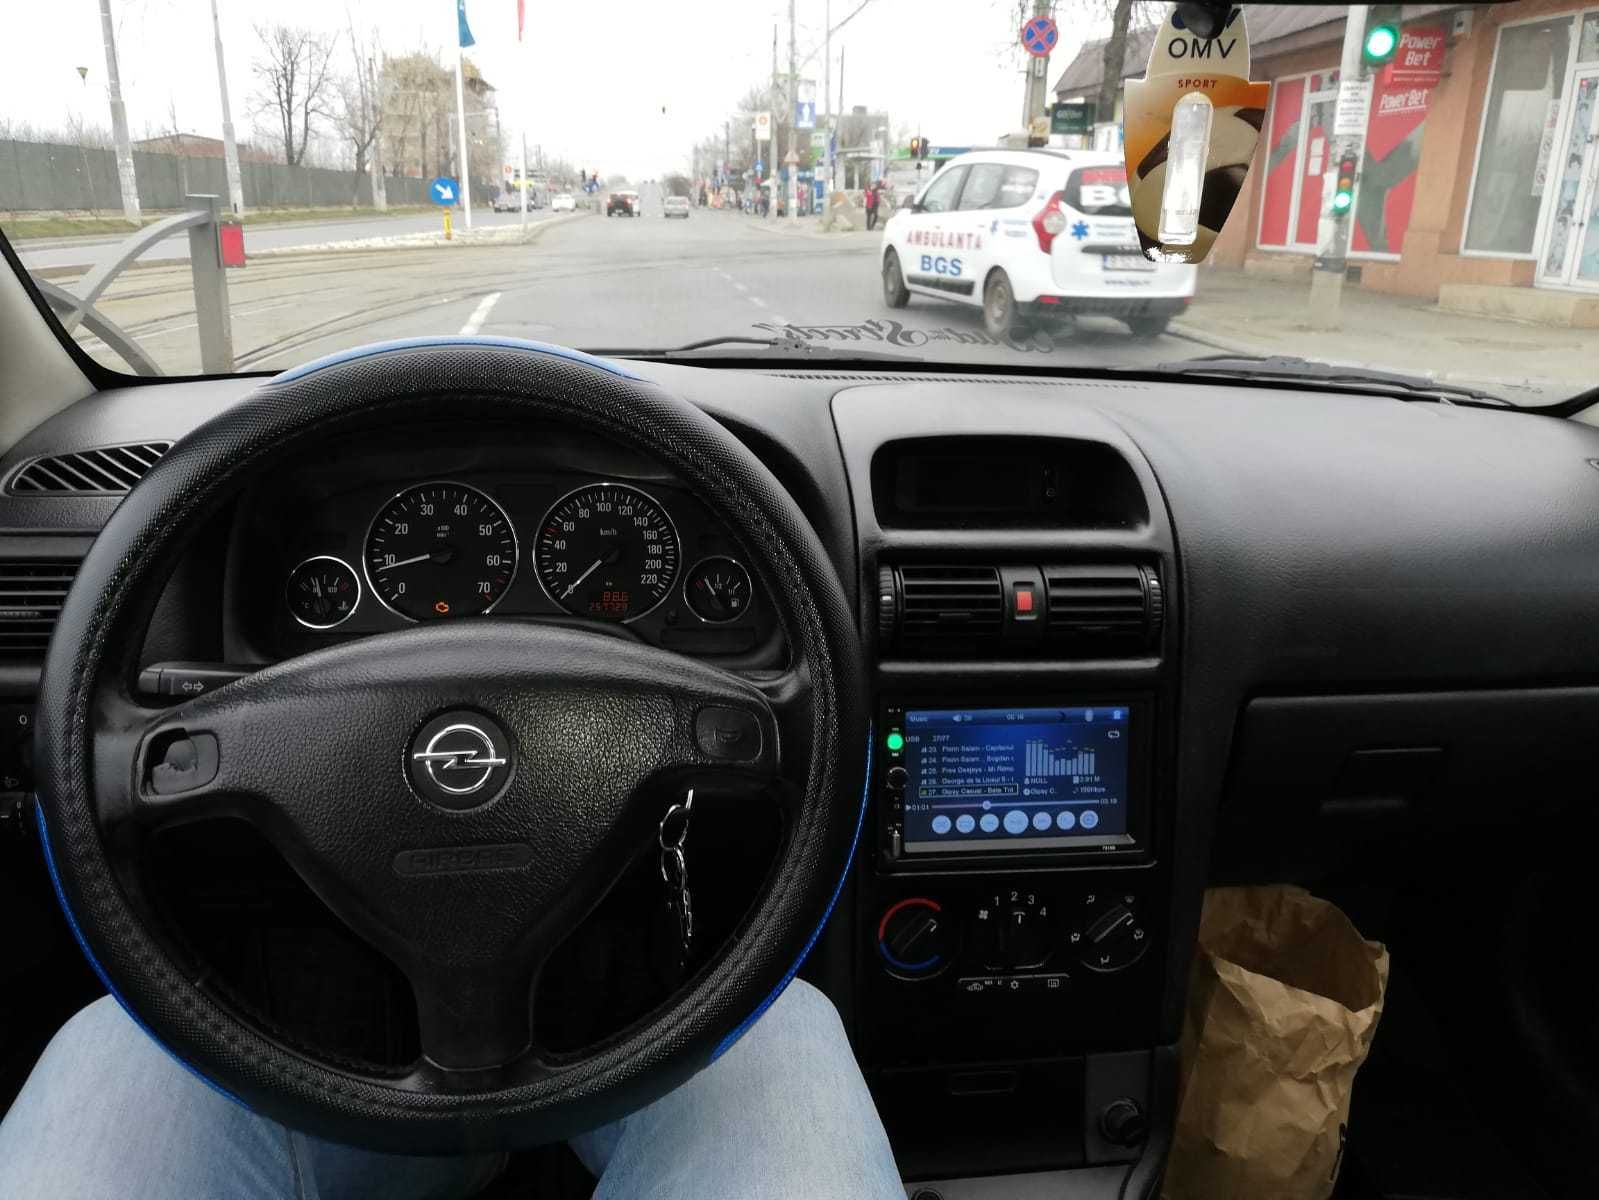 Navigatie Casetofon Opel Astra G Waze YouTube prin MirroLink BT USB